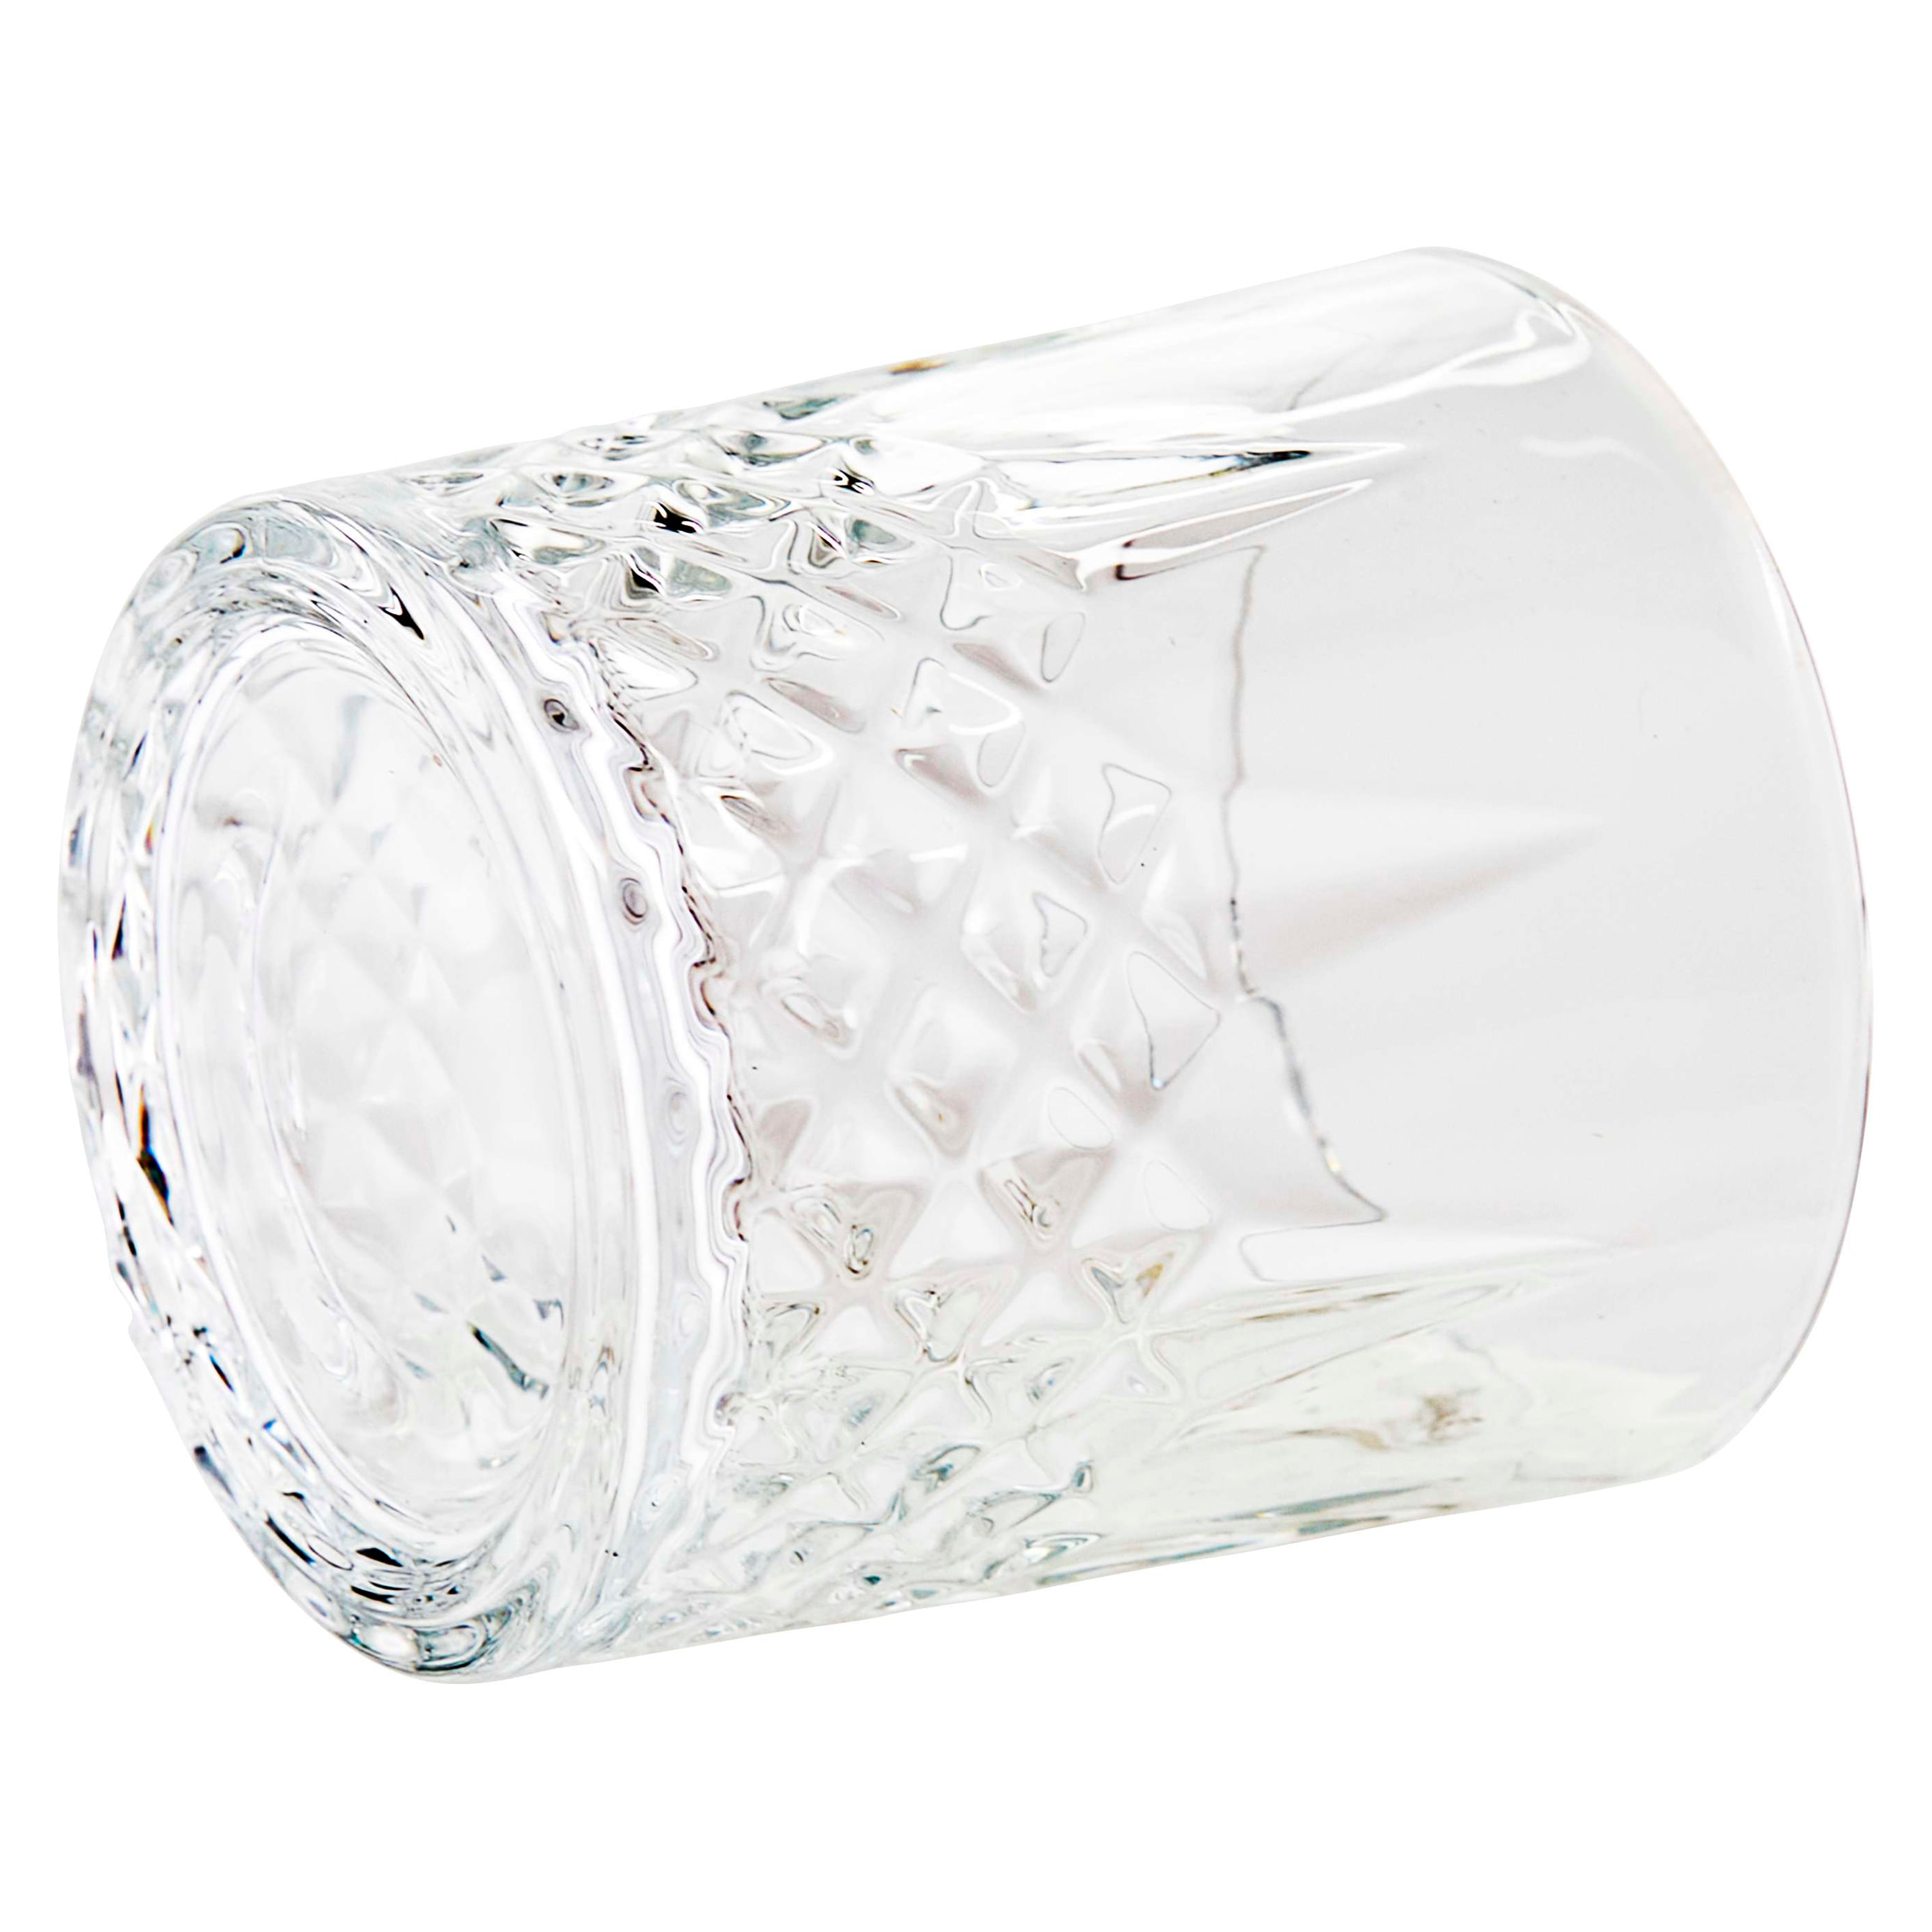 TIMEFOTO Juego de 4 vasos de cristal de color diamante para decoración  navideña, cristalería vintage…Ver más TIMEFOTO Juego de 4 vasos de cristal  de